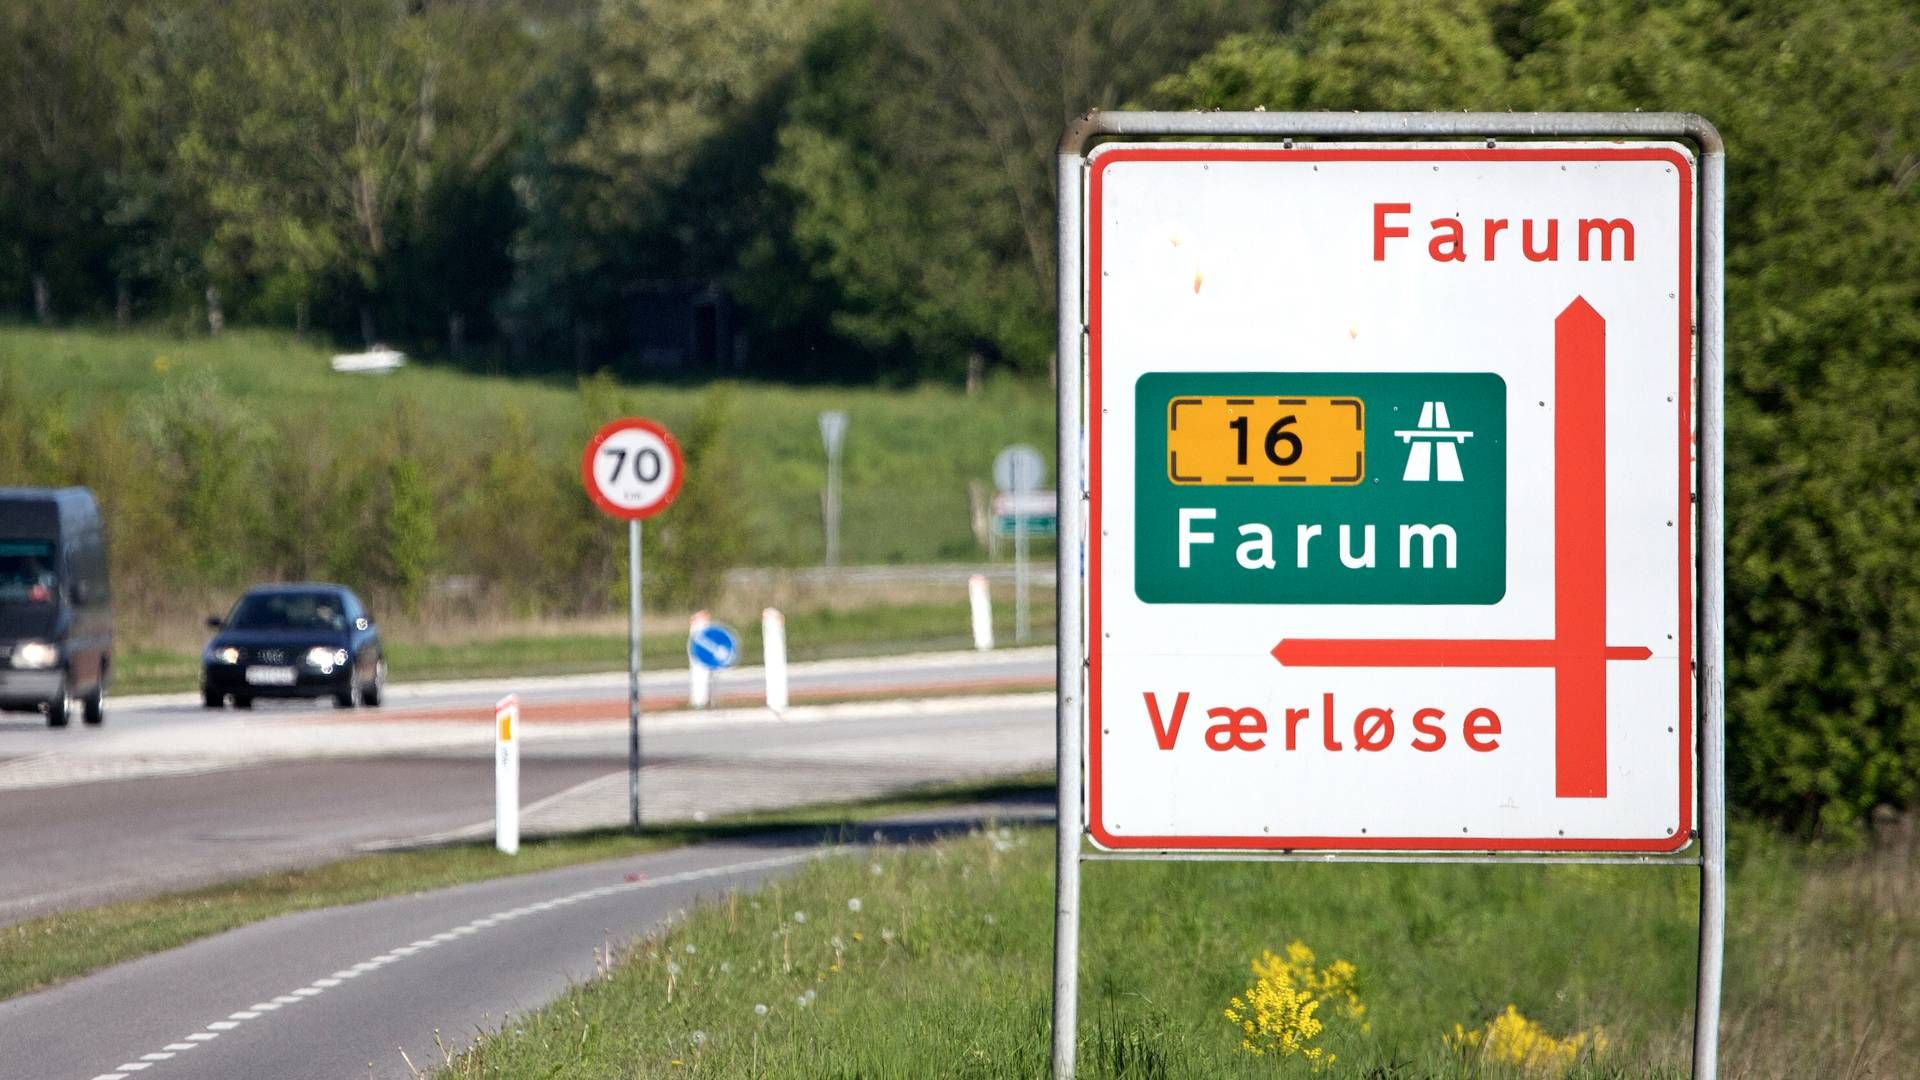 Ejendommen i Farum er 4500 kvm stor og består af en række mindre lejemål med lager, kontor og produktion. | Foto: Jens Dresling